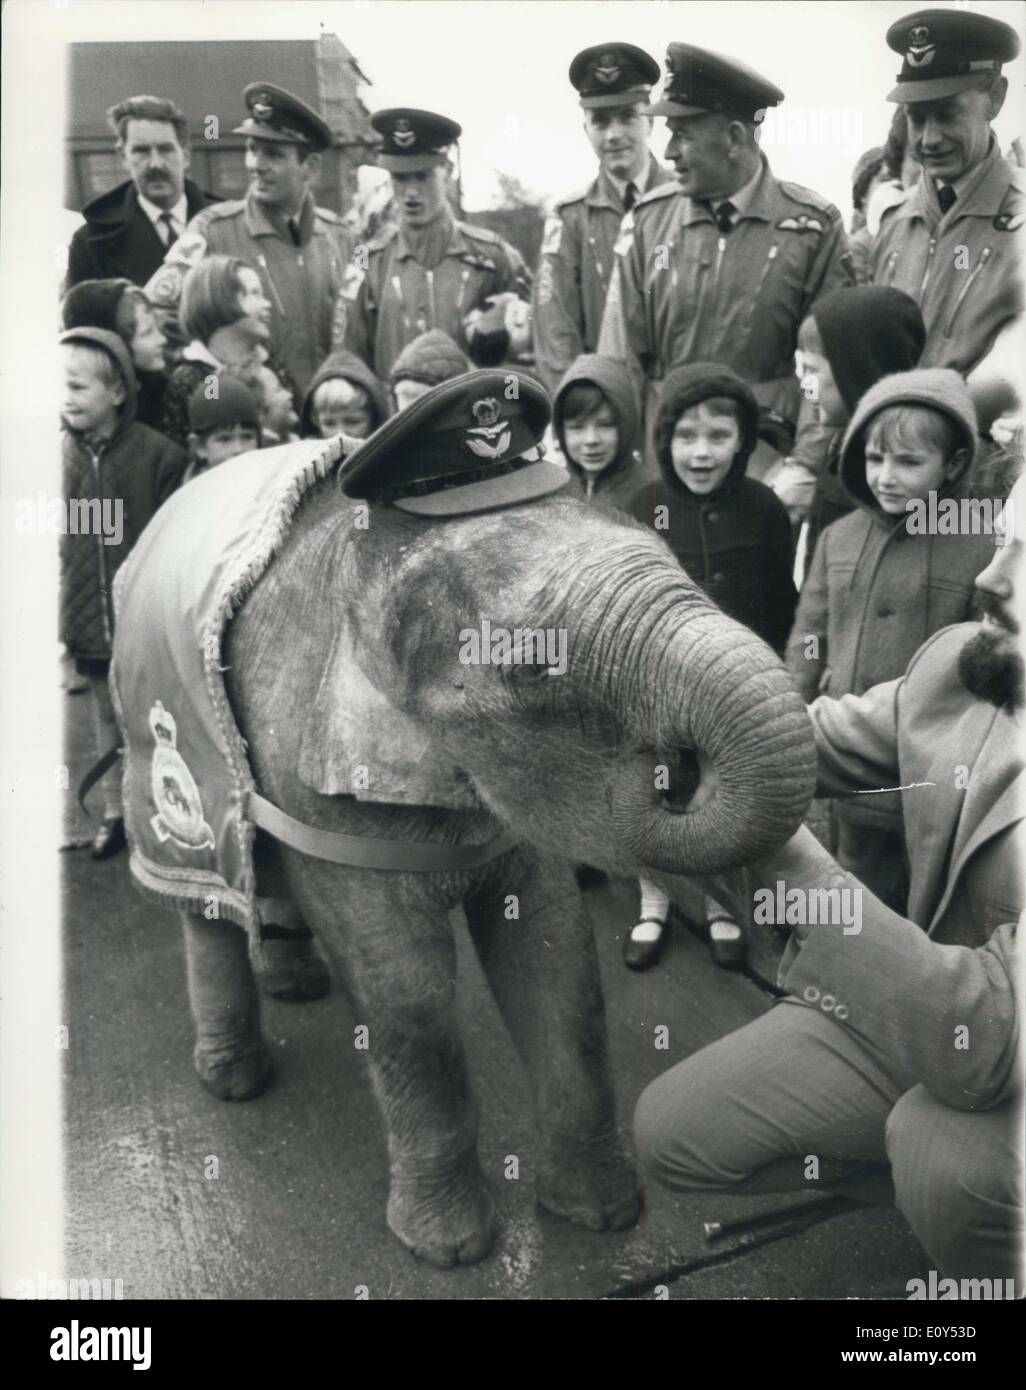 08 nov., 1968 - de la R.A.F. L'éléphant mascotte de l'Escadron adopte comme : n° 27 de l'Escadron de la R.A.F. Strike Command, a organisé un défilé aujourd'hui à la R.A.F. Gare Scampton, près de Lincoln, pour marquer l'adoption de ''Gosta'' une peine de huit mois de l'éléphant du Zoo Sherwood, Hucknall, Nottingham. Il est également le 53e anniversaire de la formation de l'Escadron. L'éléphant est commémoré dans No 27 de l'Escadron Insigne : il découle du premier avion avec lequel l'escadron a été équipée en 1915 l'Martinsyde Scout, plus tard d'être appelé l'éléphant Martinsyde en raison de son apparence lourde Banque D'Images